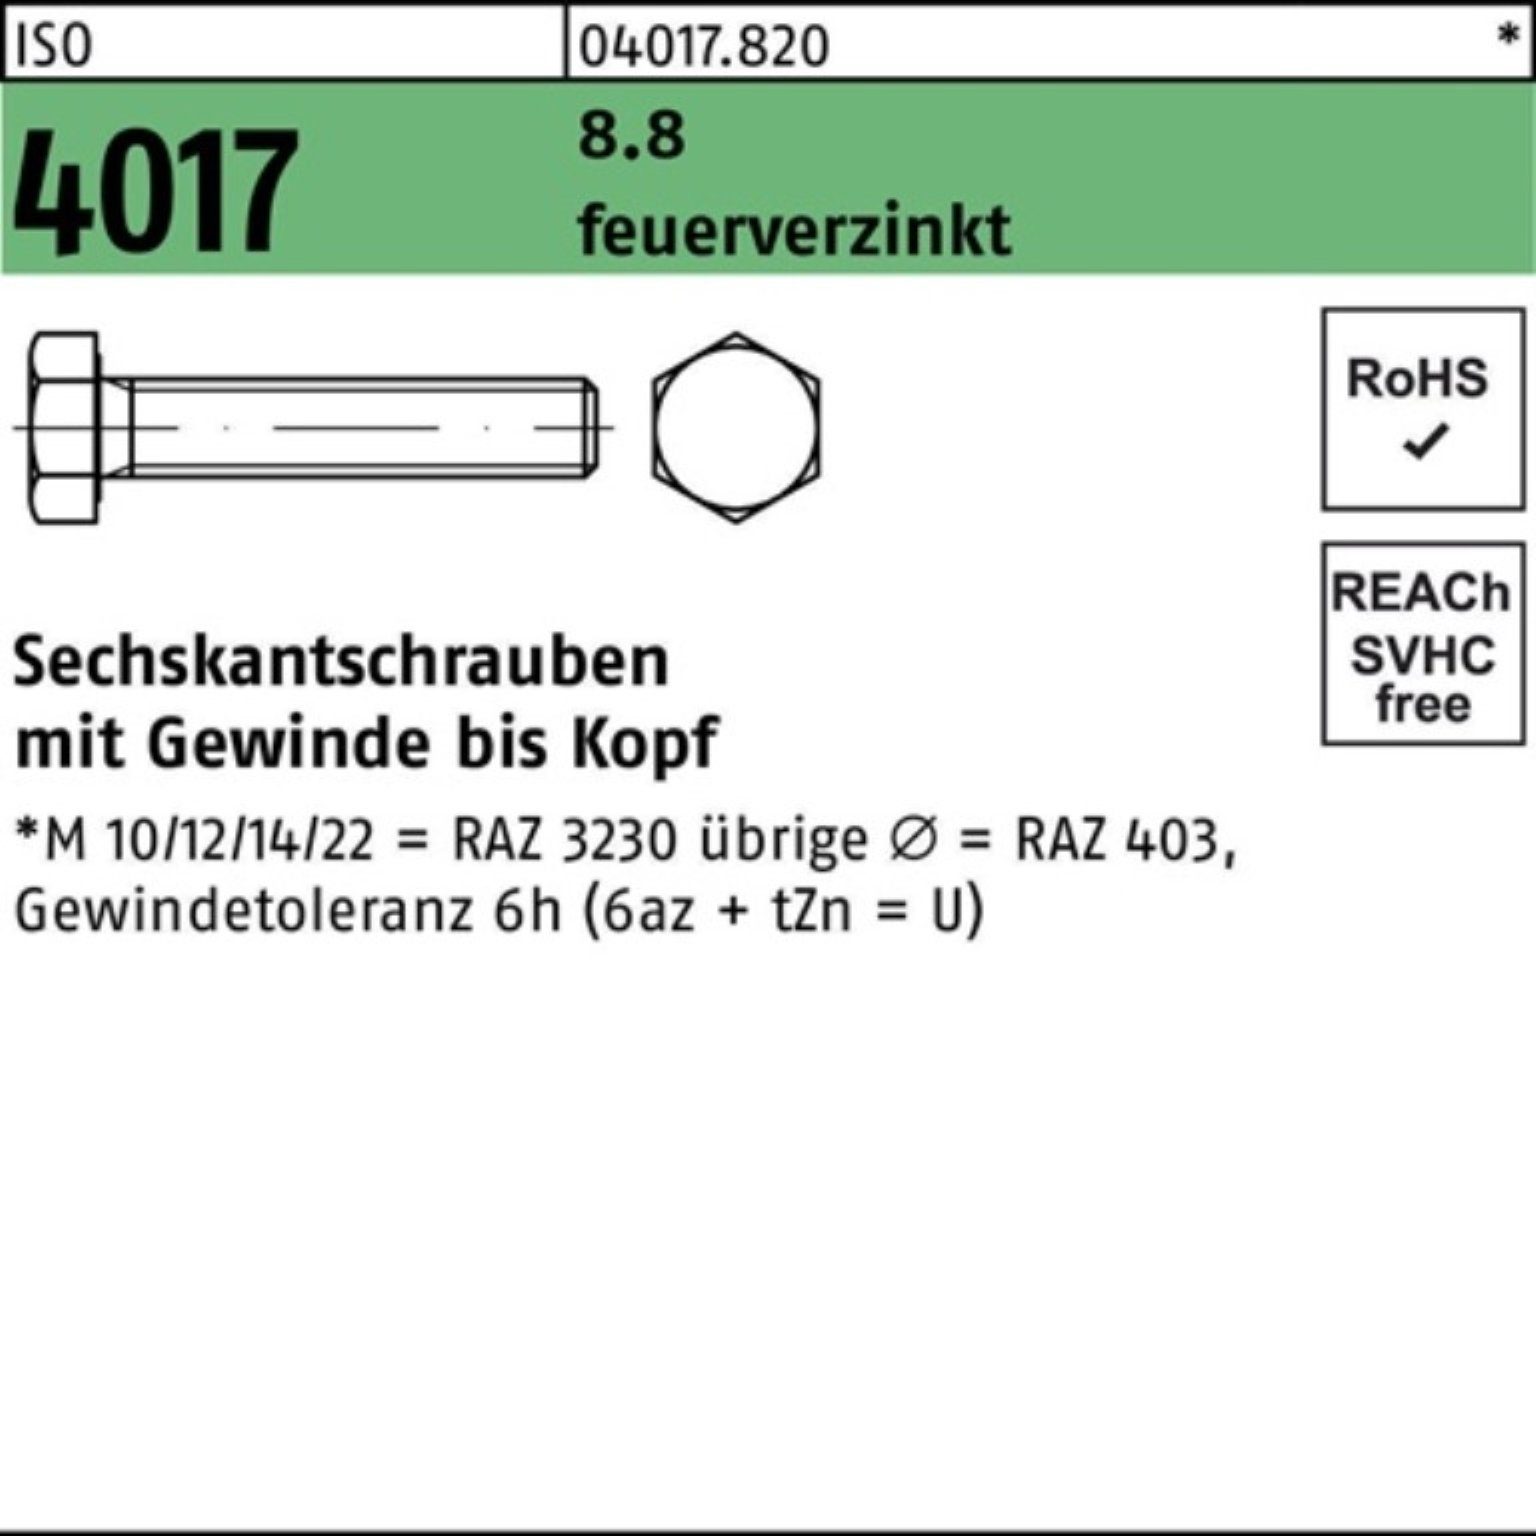 ISO Sechskantschraube St Bufab Pack 4017 M16x VG 8.8 Sechskantschraube 55 50 feuerverz. 100er